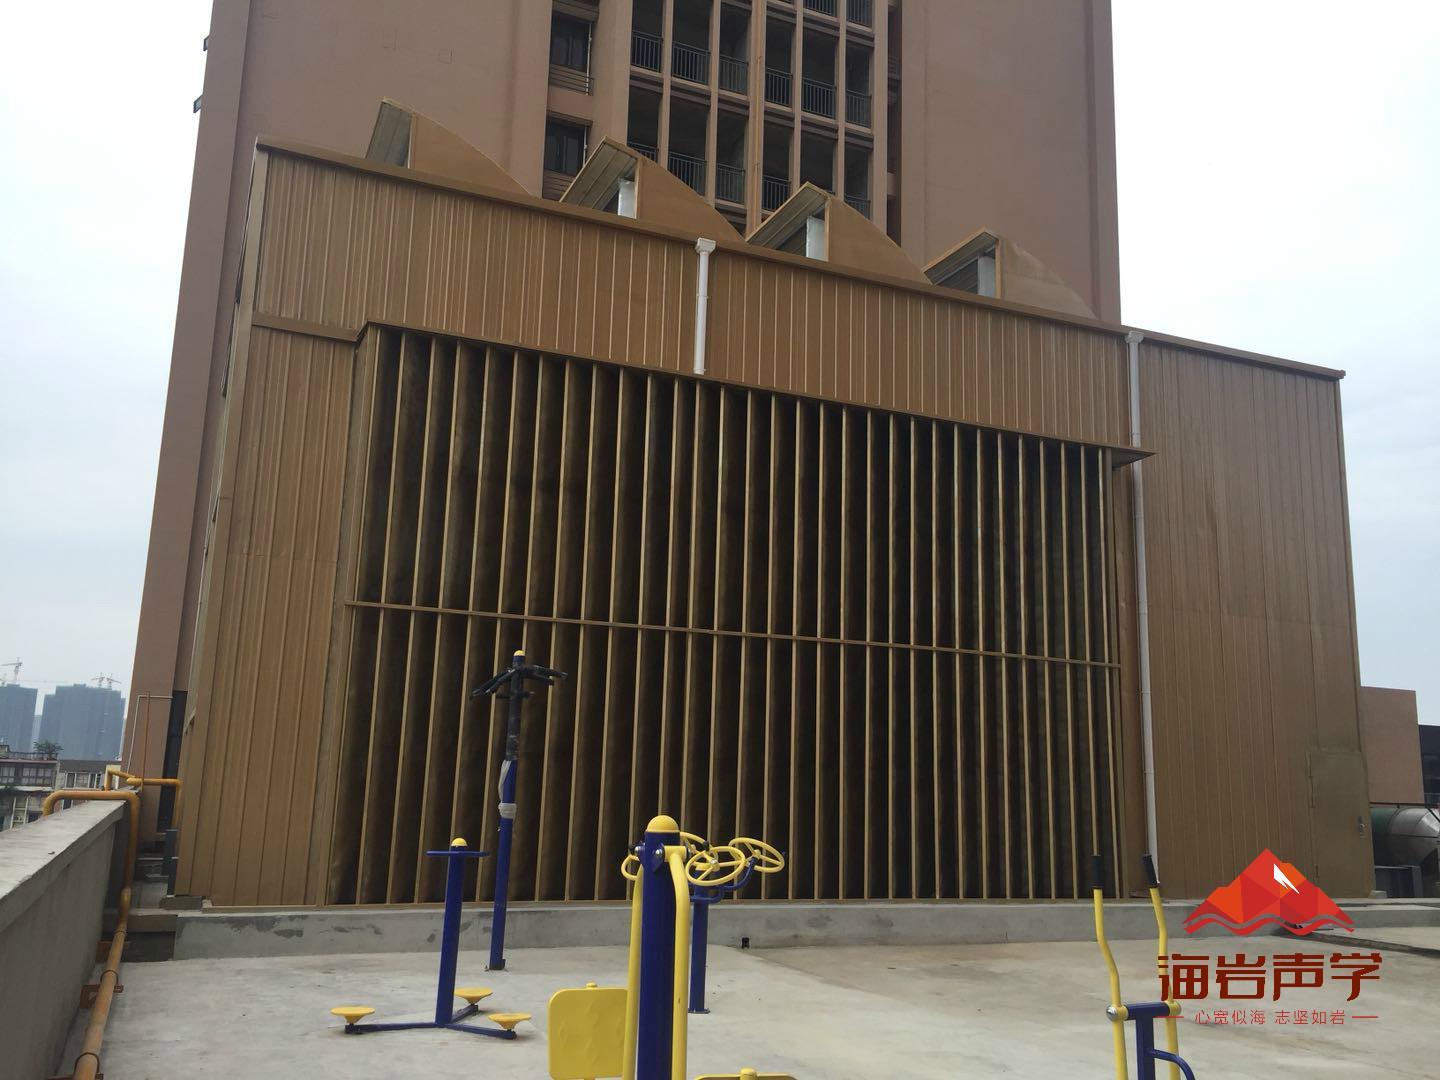 迪庆冷却塔降噪隔音 四川海岩声学科技有限公司